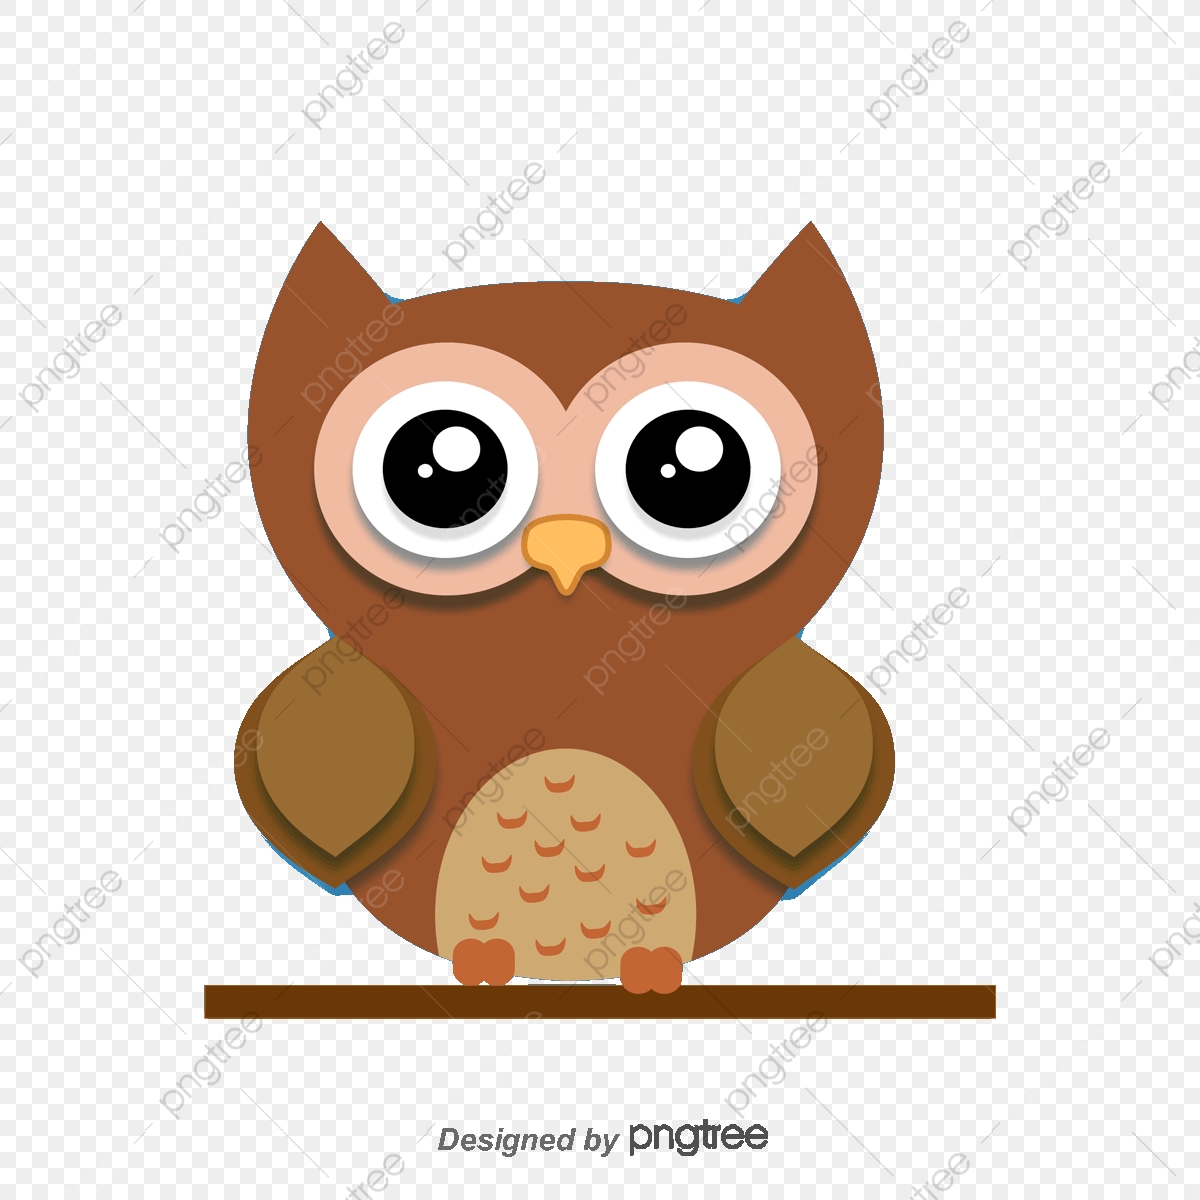 clipart owl cartoon